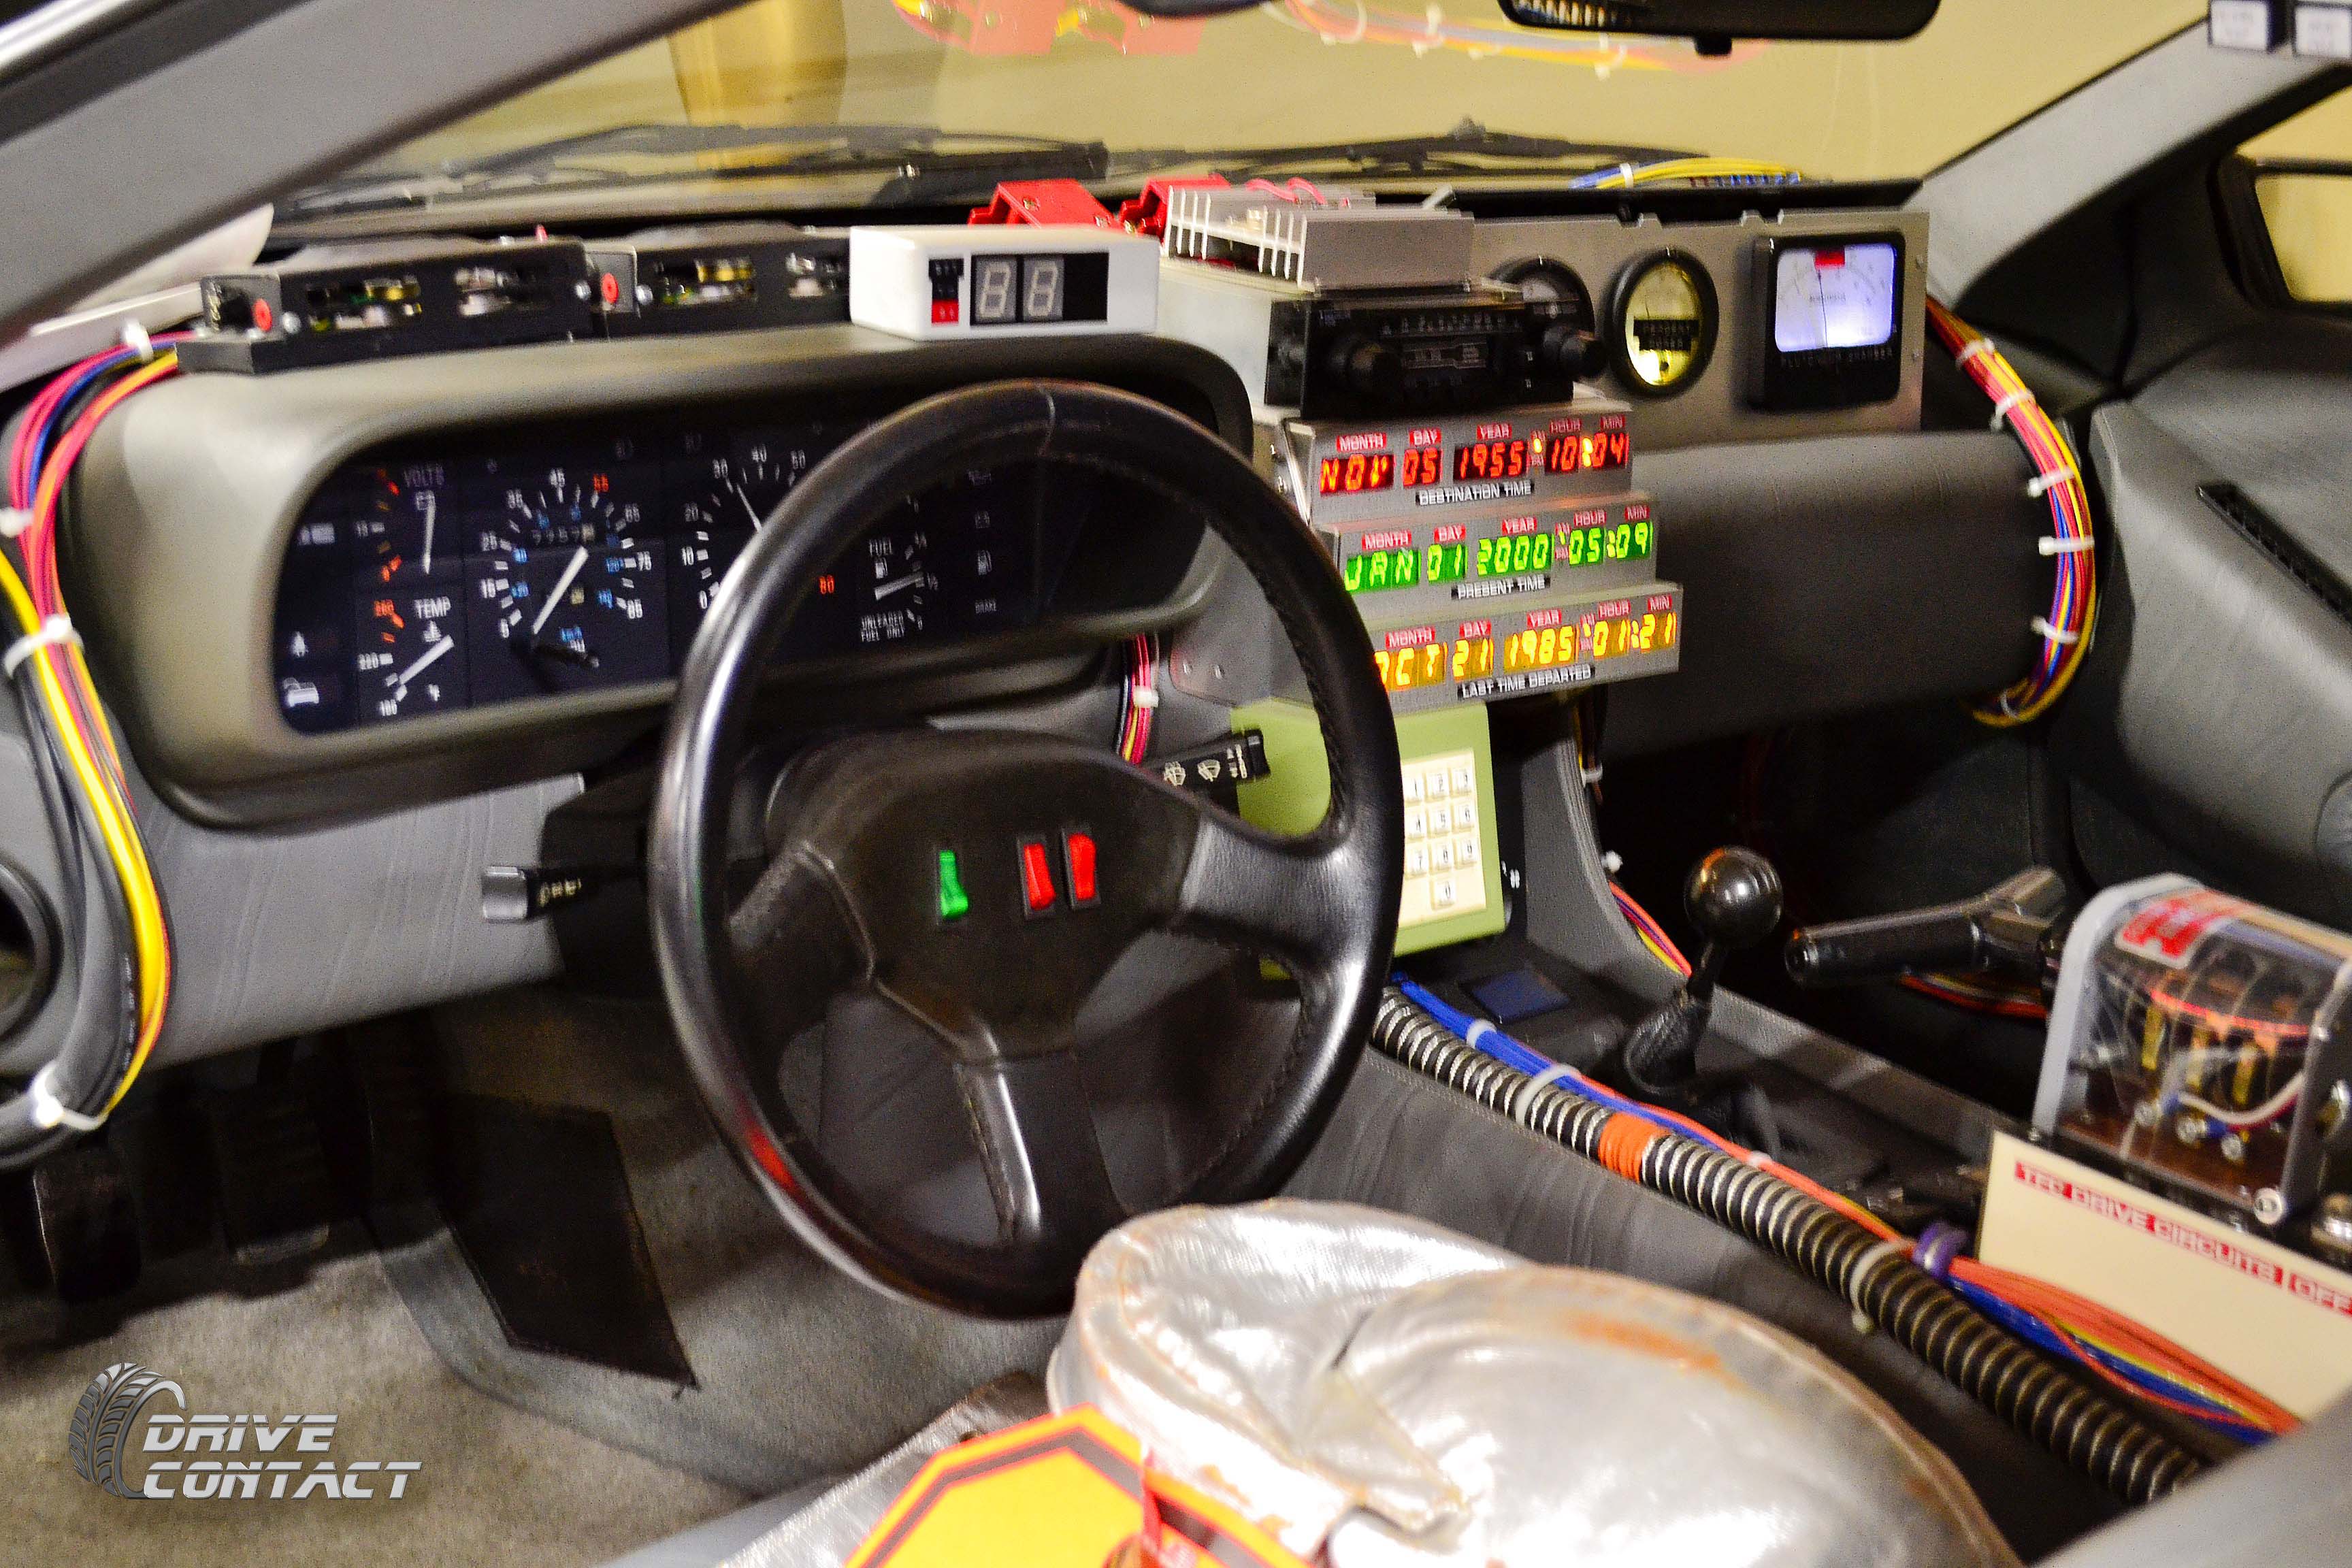 DeLorean interior - Back to the future